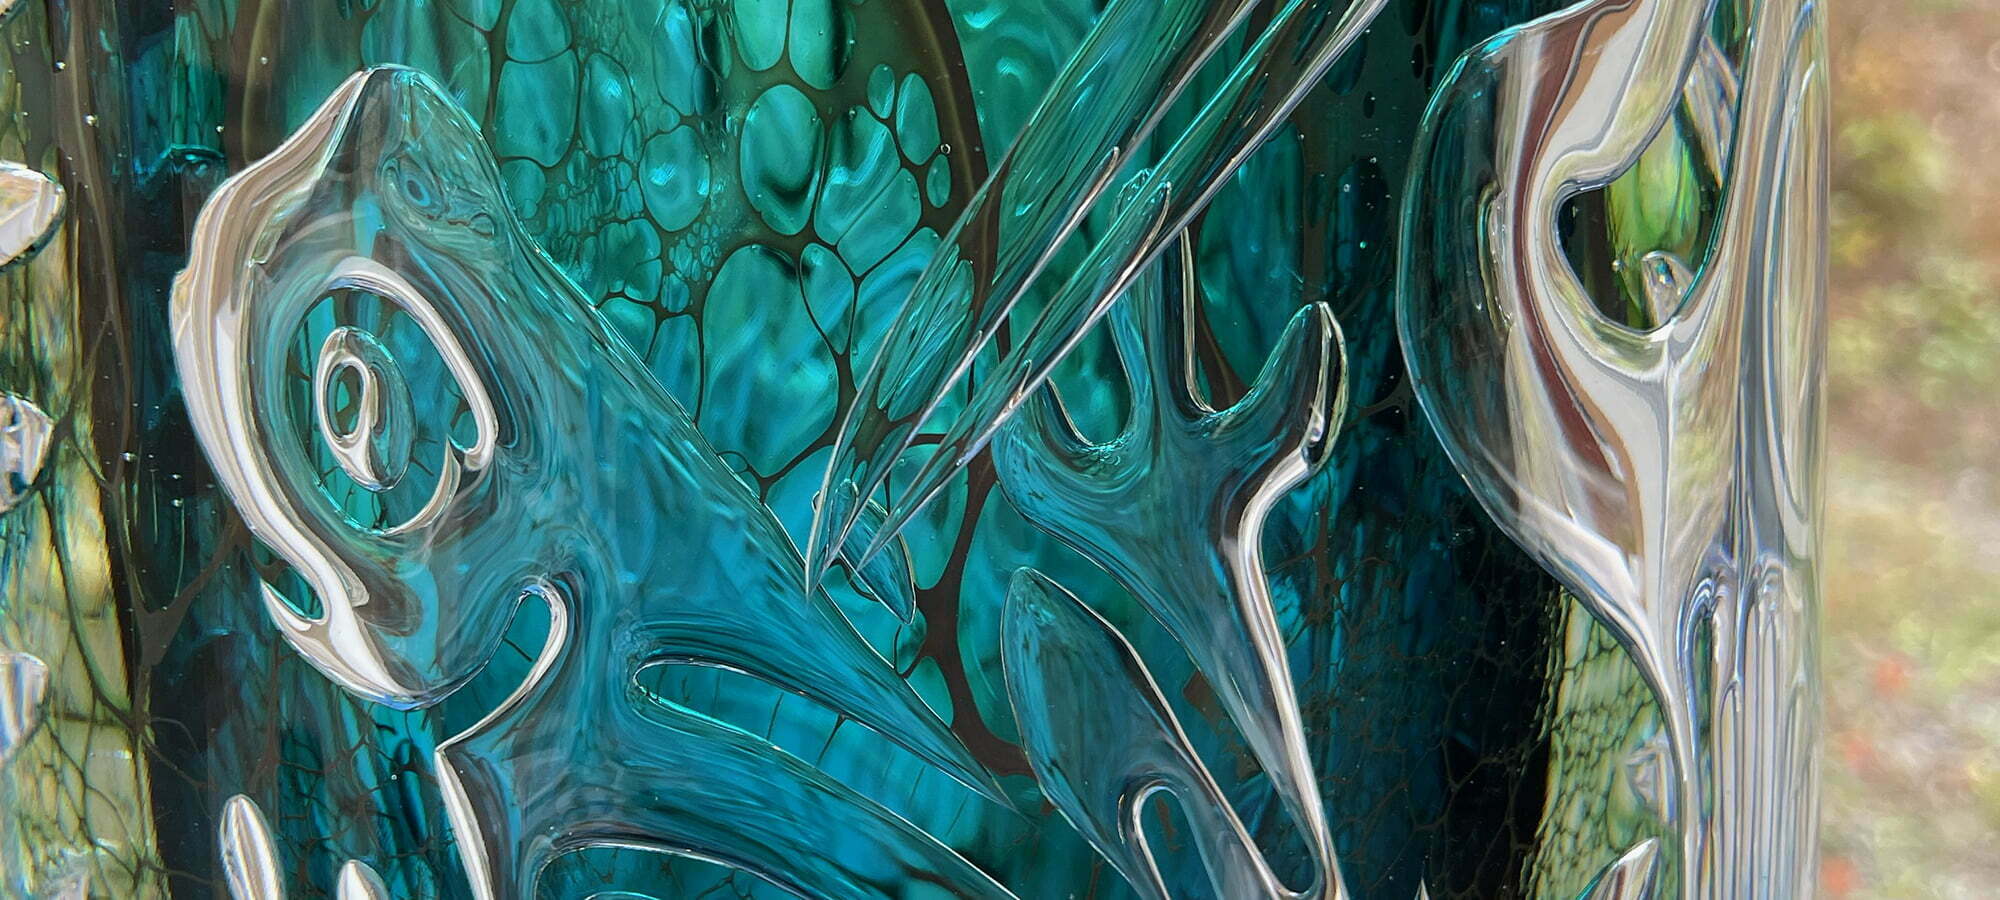 منحوتة زجاجية مصنوعة من فن الزجاج لميكيوهان ، جلاسريكت